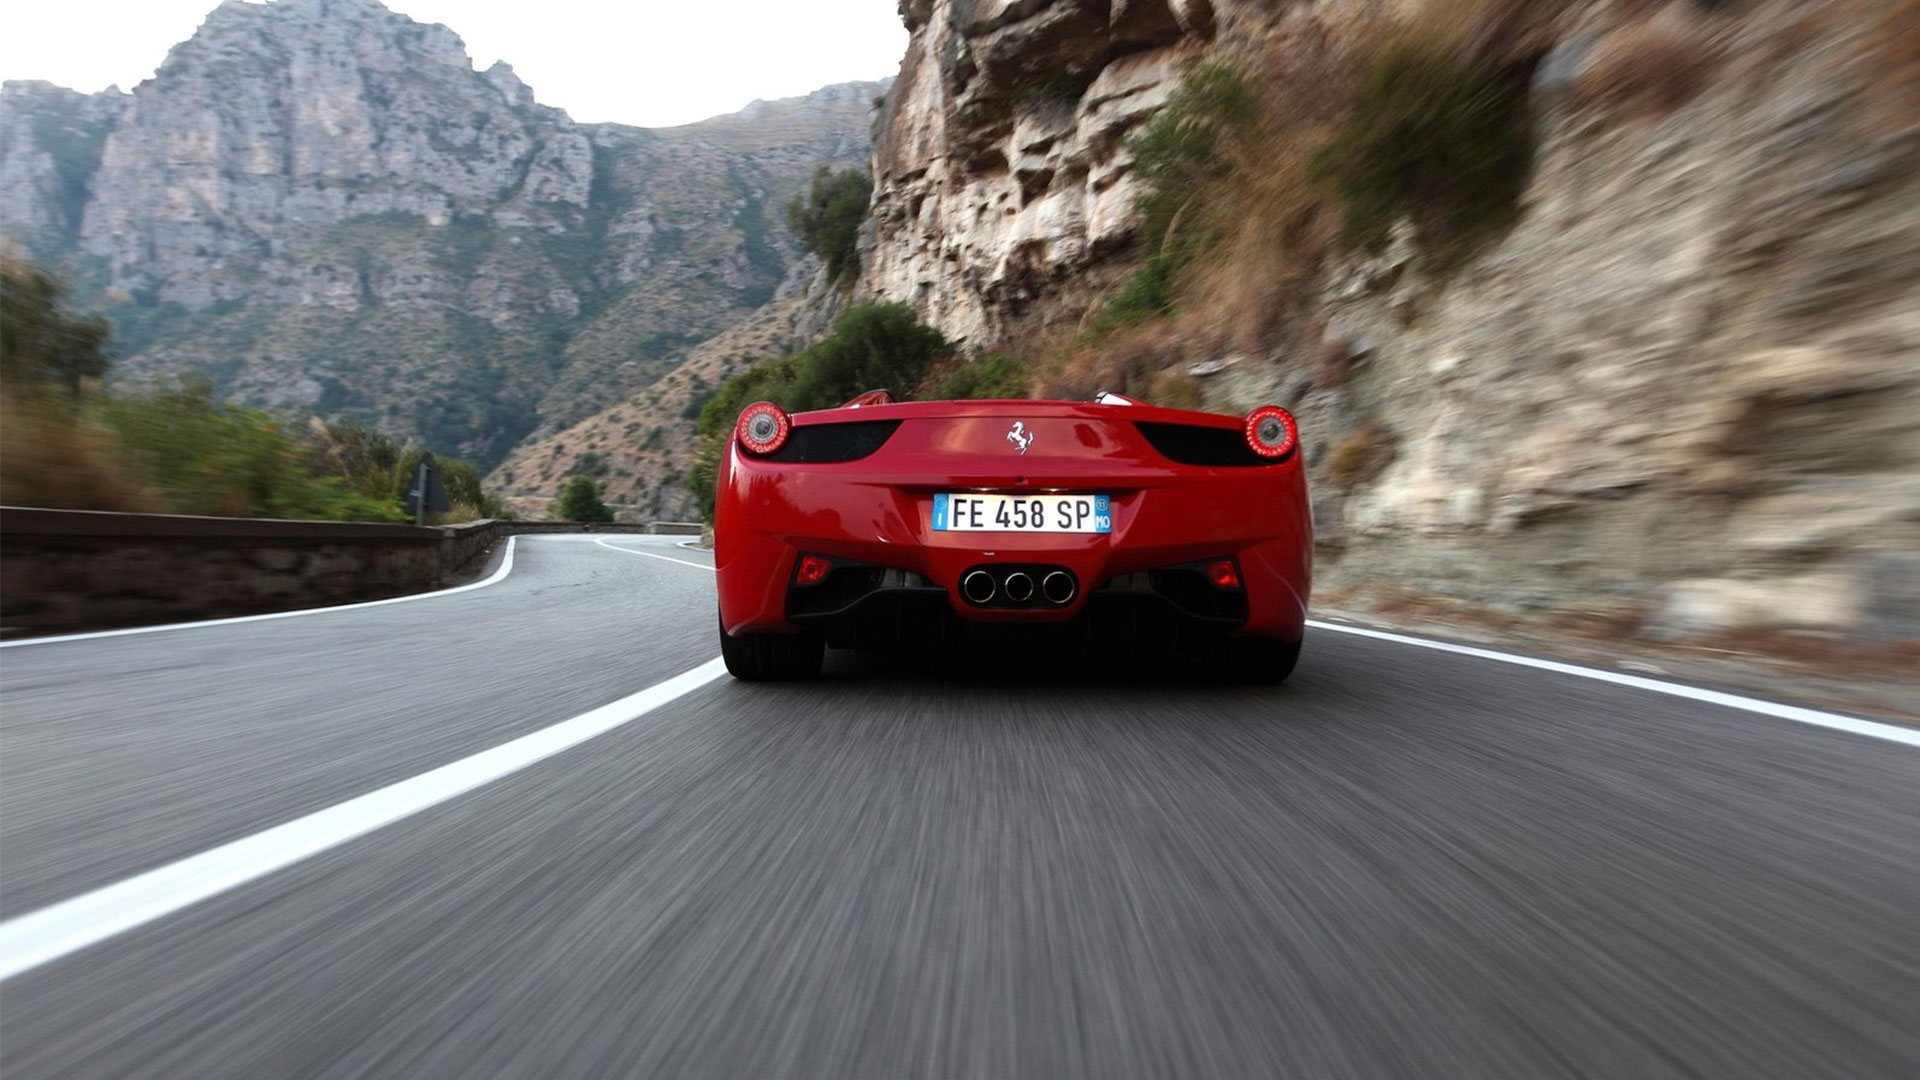 2015 Ferrari 458 Spider Nice Cars Images Full 756 Full HD ...